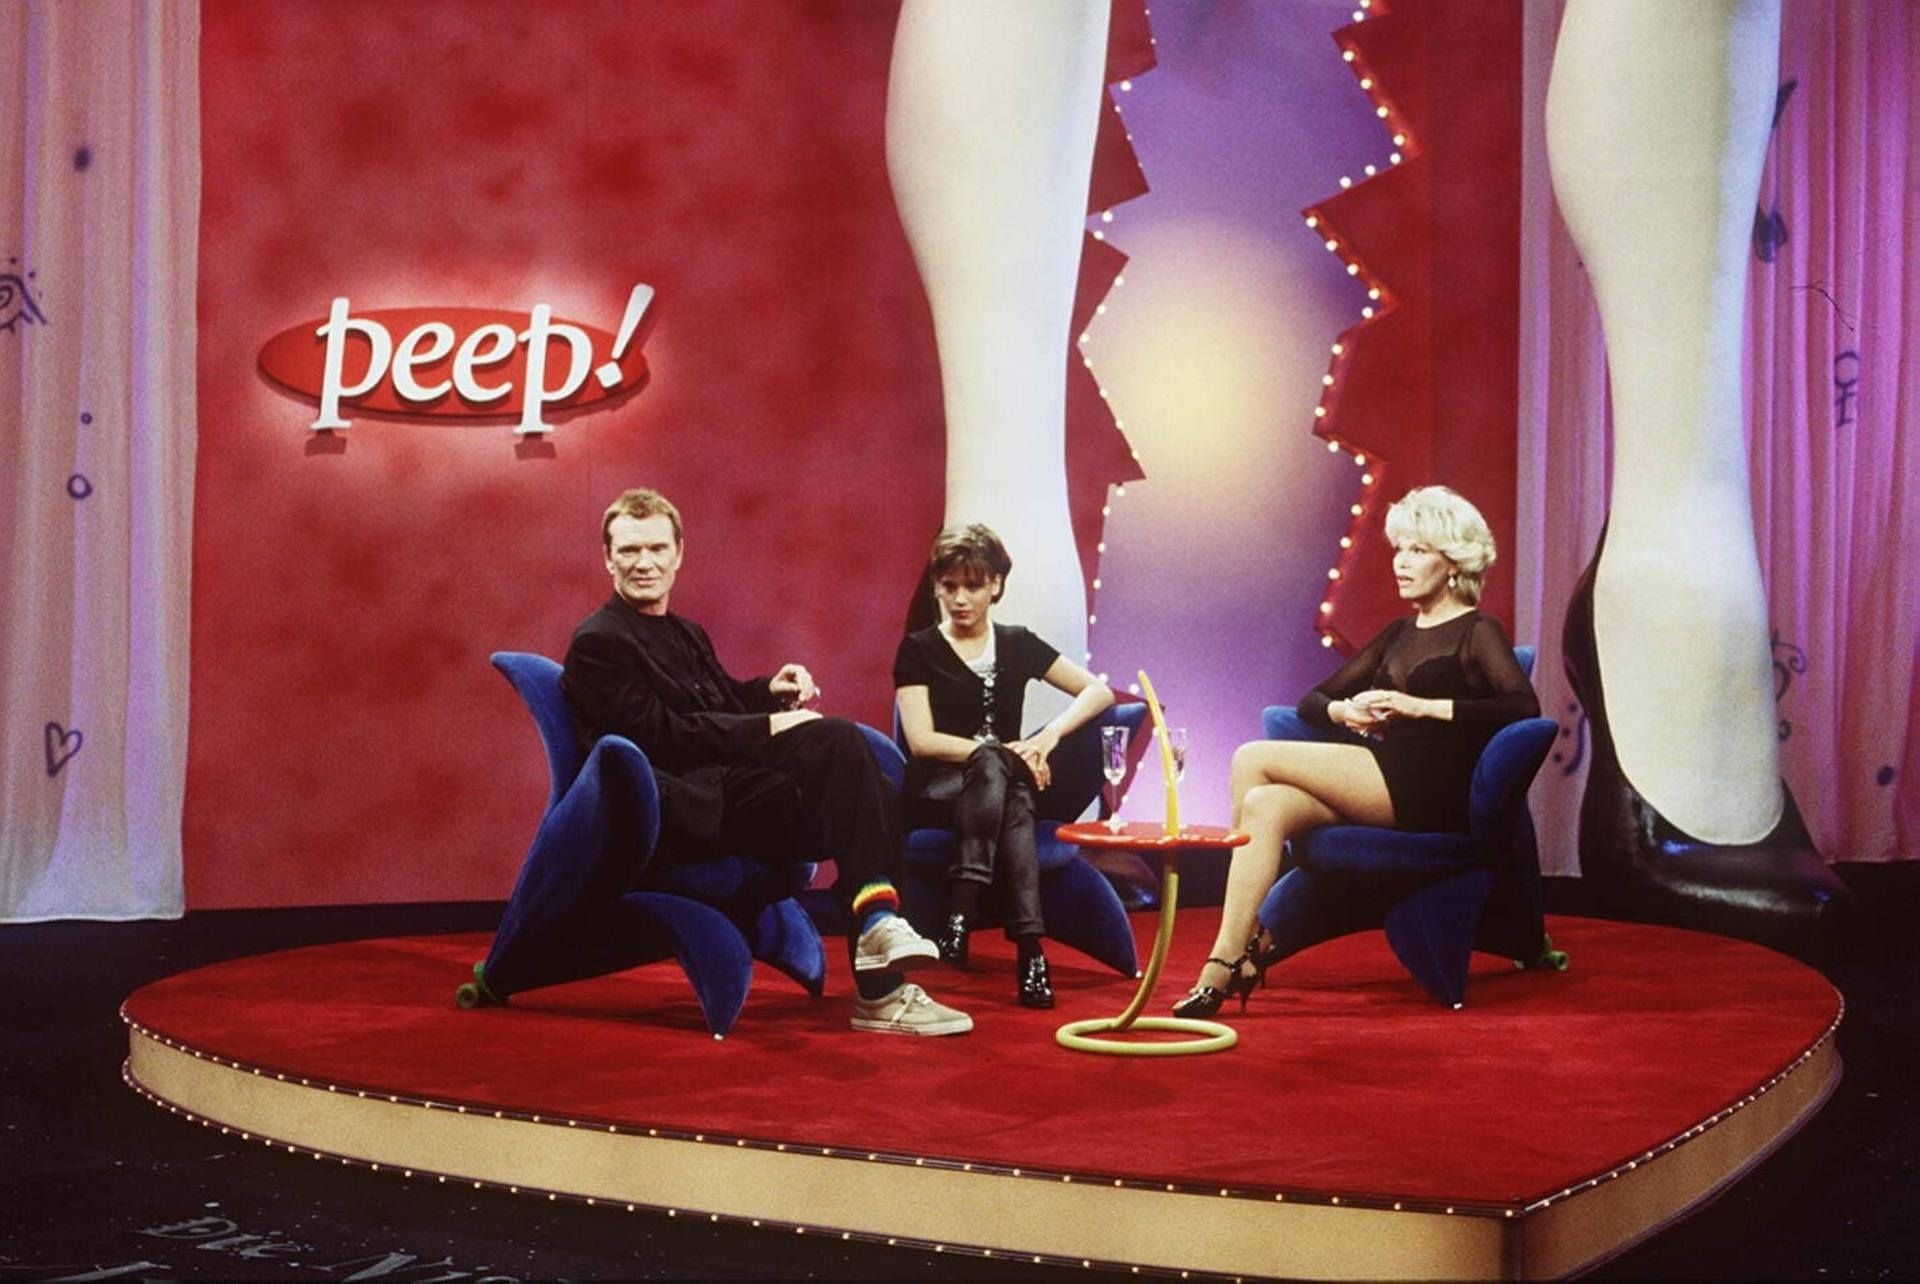 1995: Amanda Lear begrüßt Burkhard Driest und Muriel Baumeister in der TV-Show "Peep".